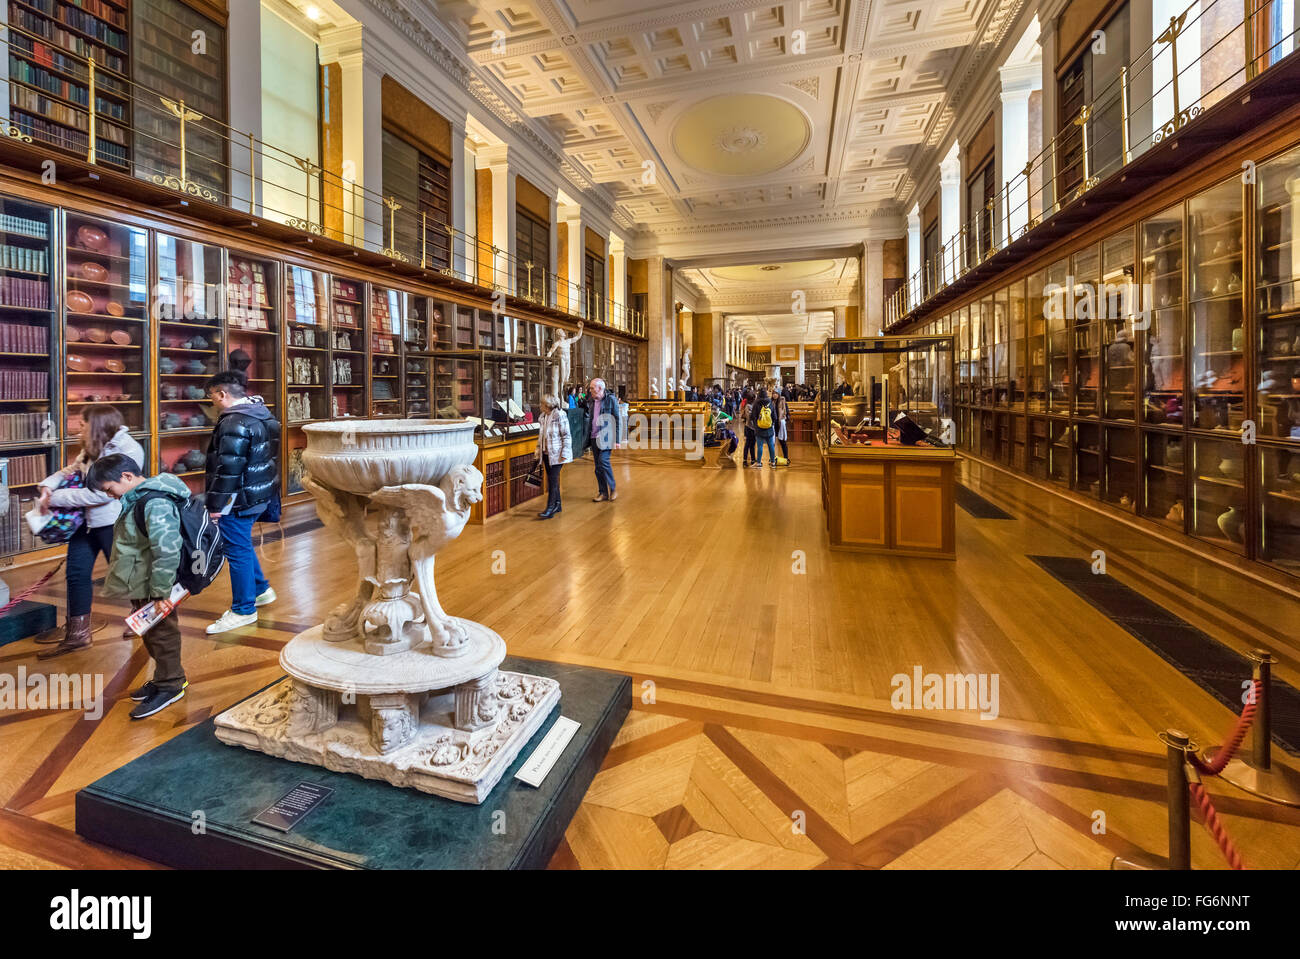 L'Illuminismo Gallery (precedentemente noto come il Re della libreria) nel British Museum, Bloomsbury, London, England, Regno Unito Foto Stock